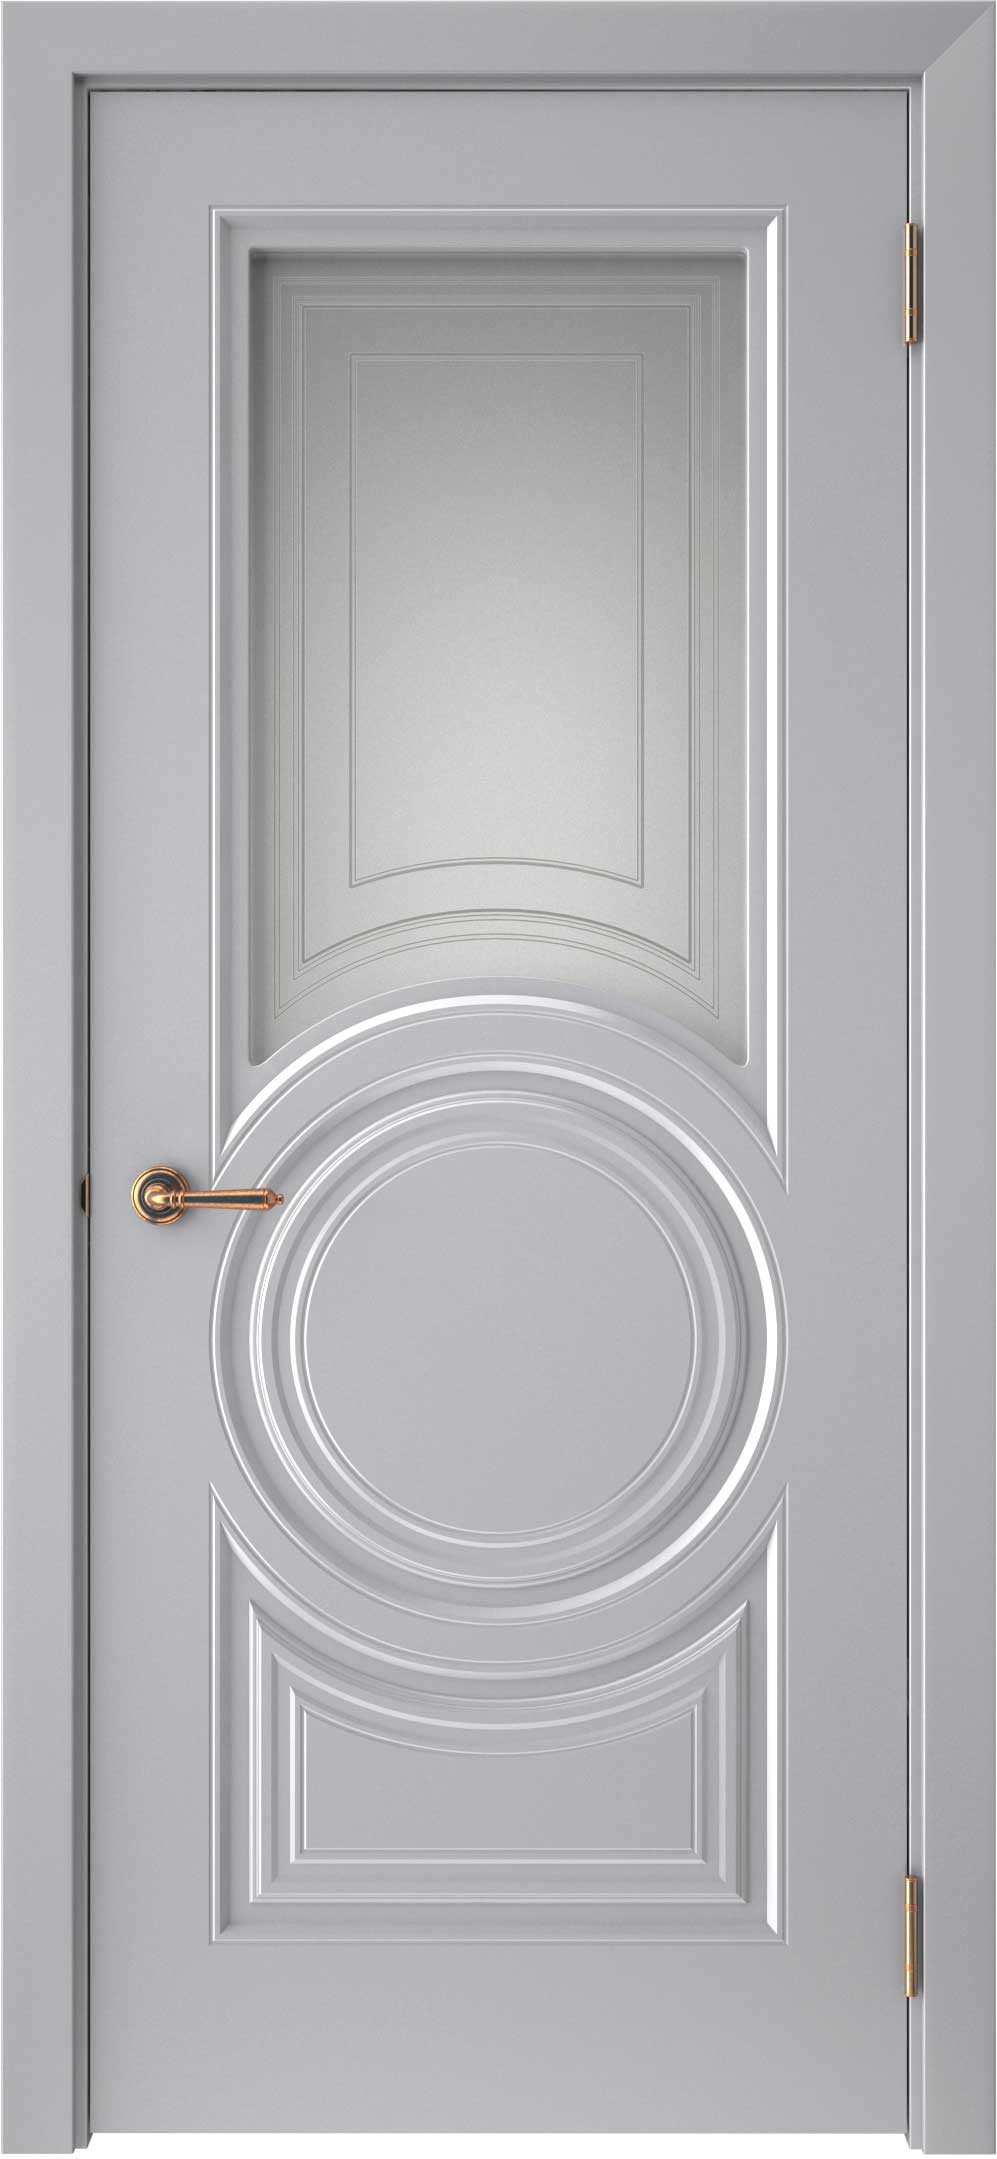 Двери крашеные (Эмаль) ТЕКОНА Смальта-45 со стеклом Серый ral размер 200 х 60 см. артикул F0000093324